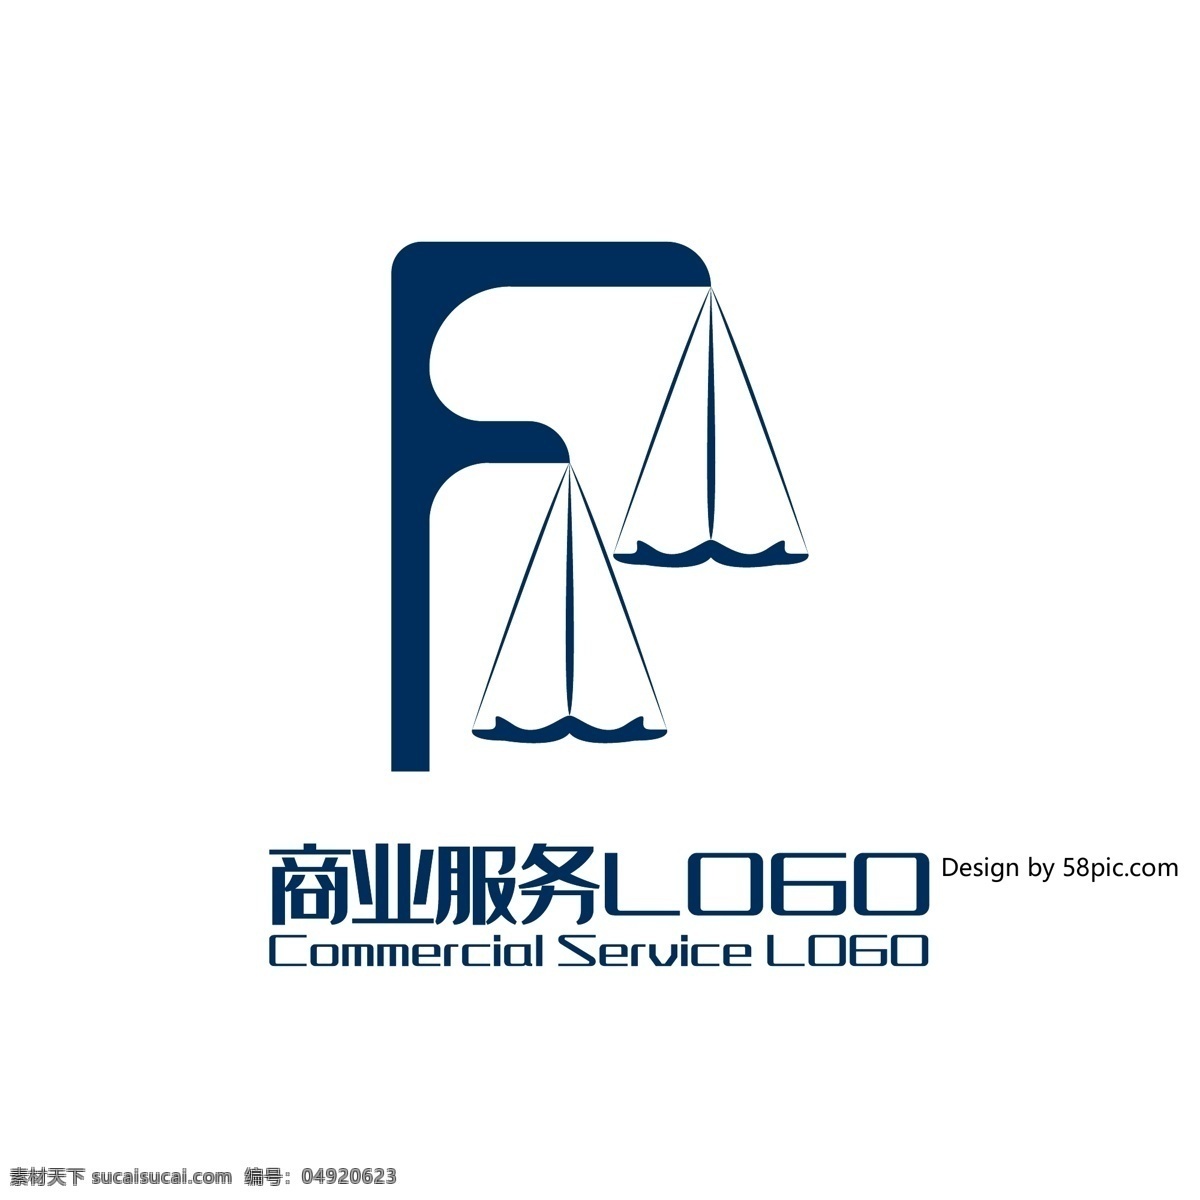 原创 创意 简约 f 字 秤 律师所 商业服务 logo 可商用 字体设计 天平 商业 服务 标志